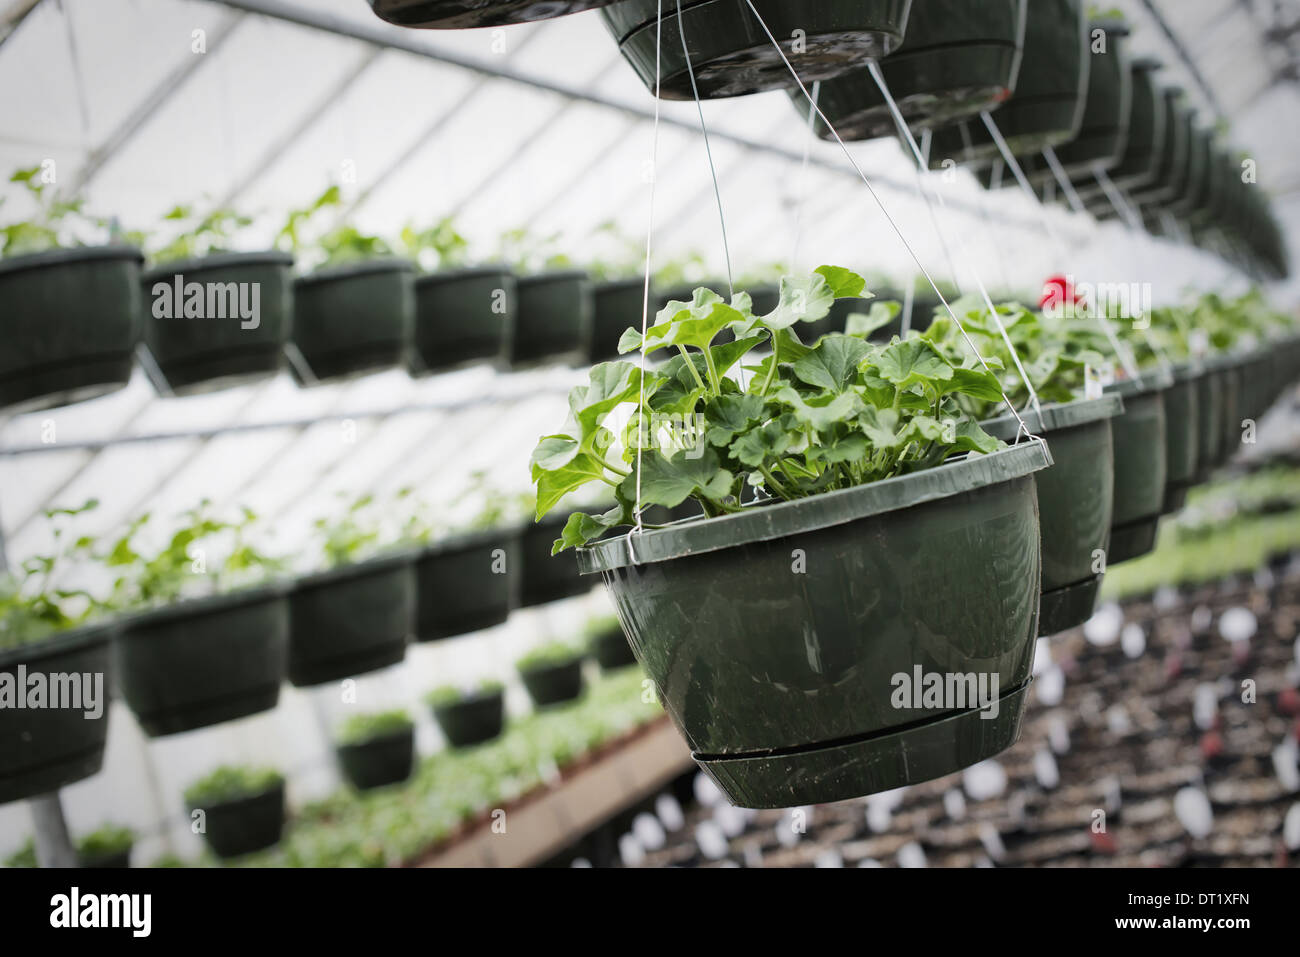 Wachstum in einem organischen Gärtnerei ein Gewächshaus mit hängenden Körben Frühling und Pflanzen Setzlinge Stockfoto